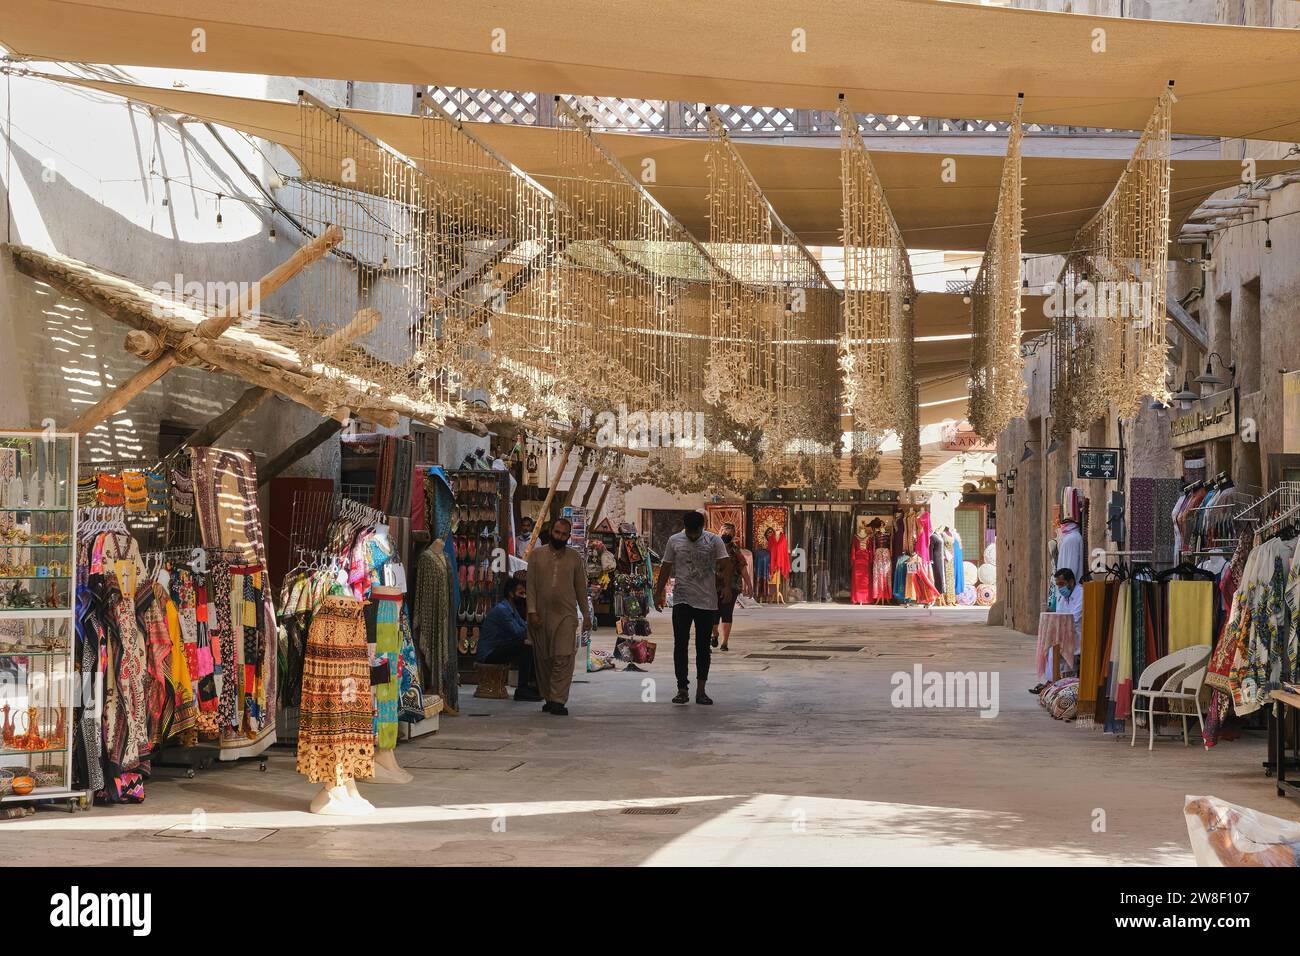 Geschäfte, in denen Touristen-Waren verkauft werden, im historischen Viertel Al Fahidi, Dubai, VAE Stockfoto